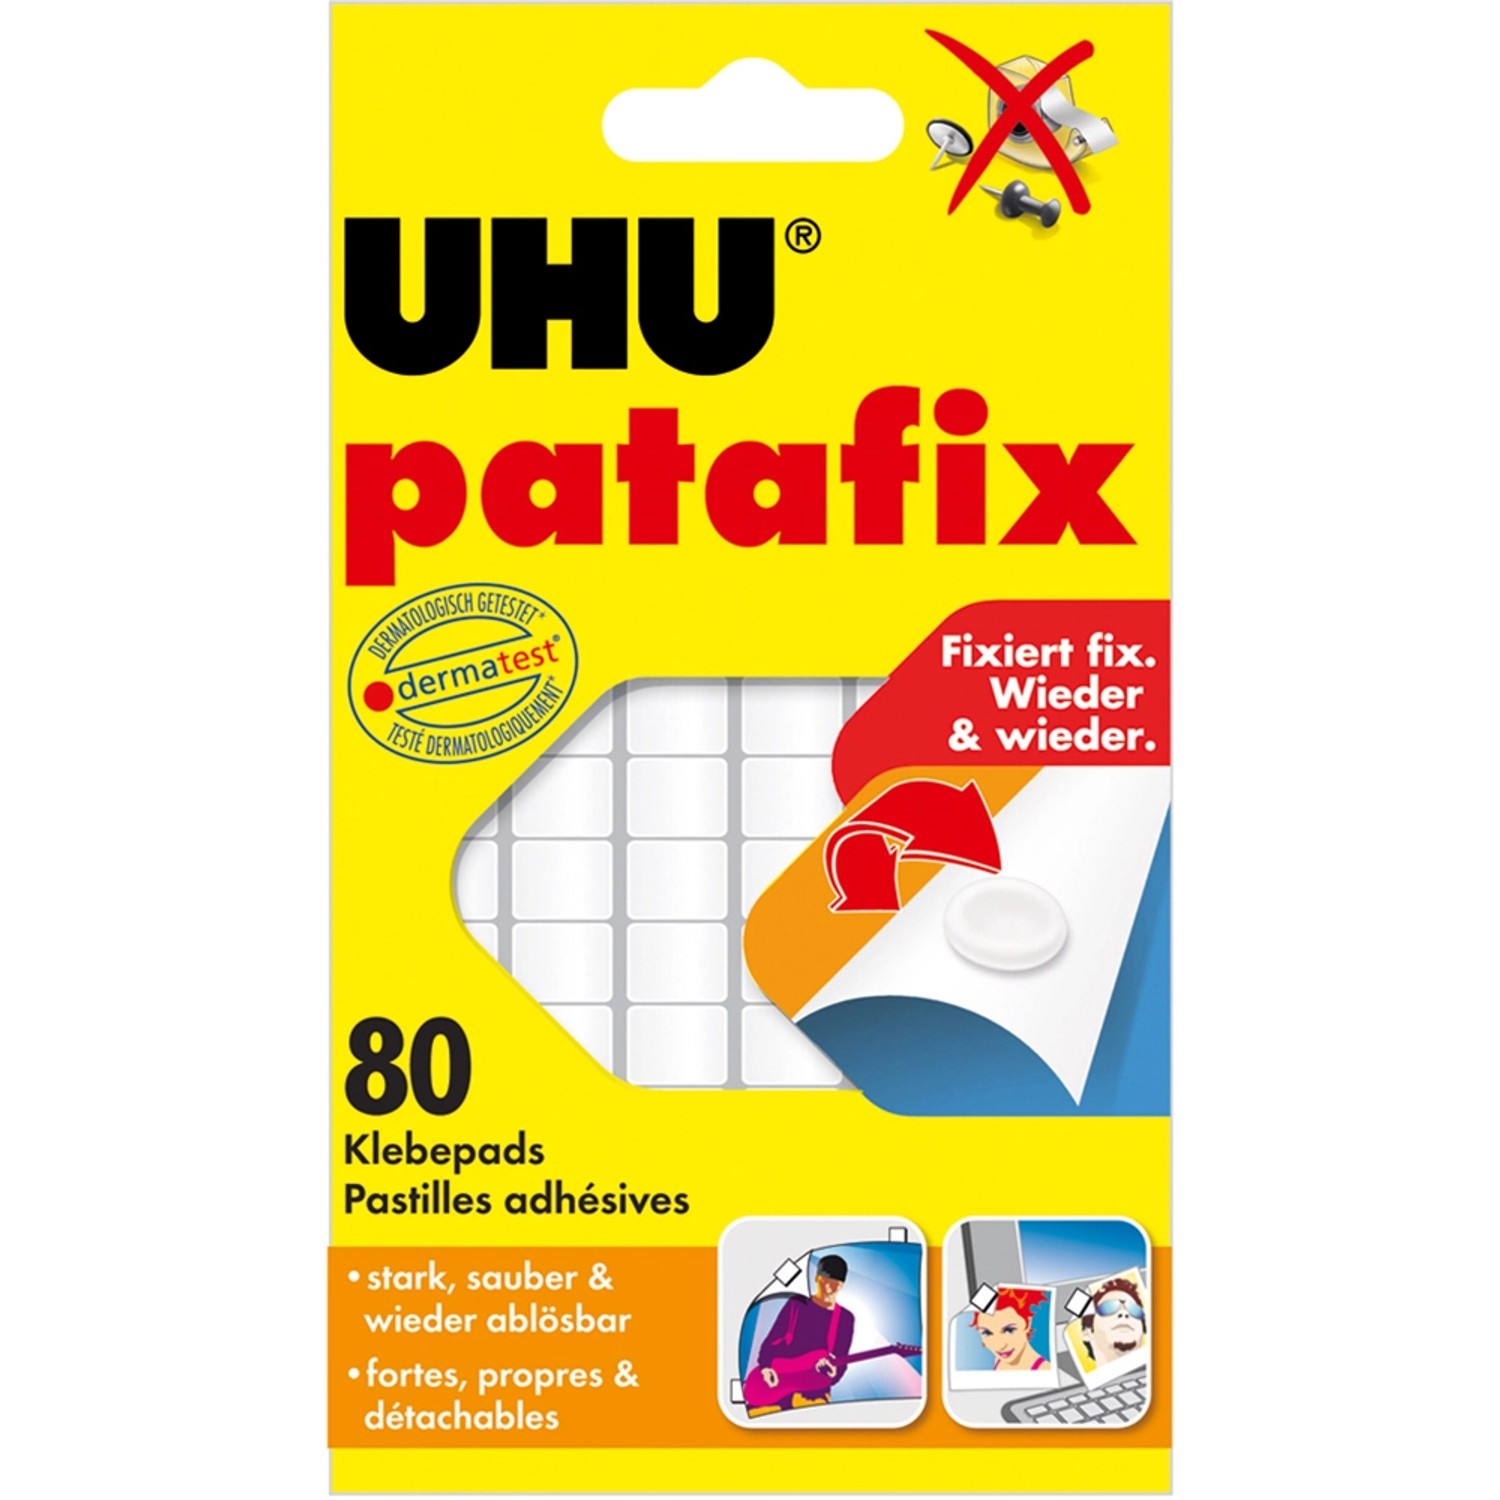 Uhu Patafix Original Weiß 80 Pads